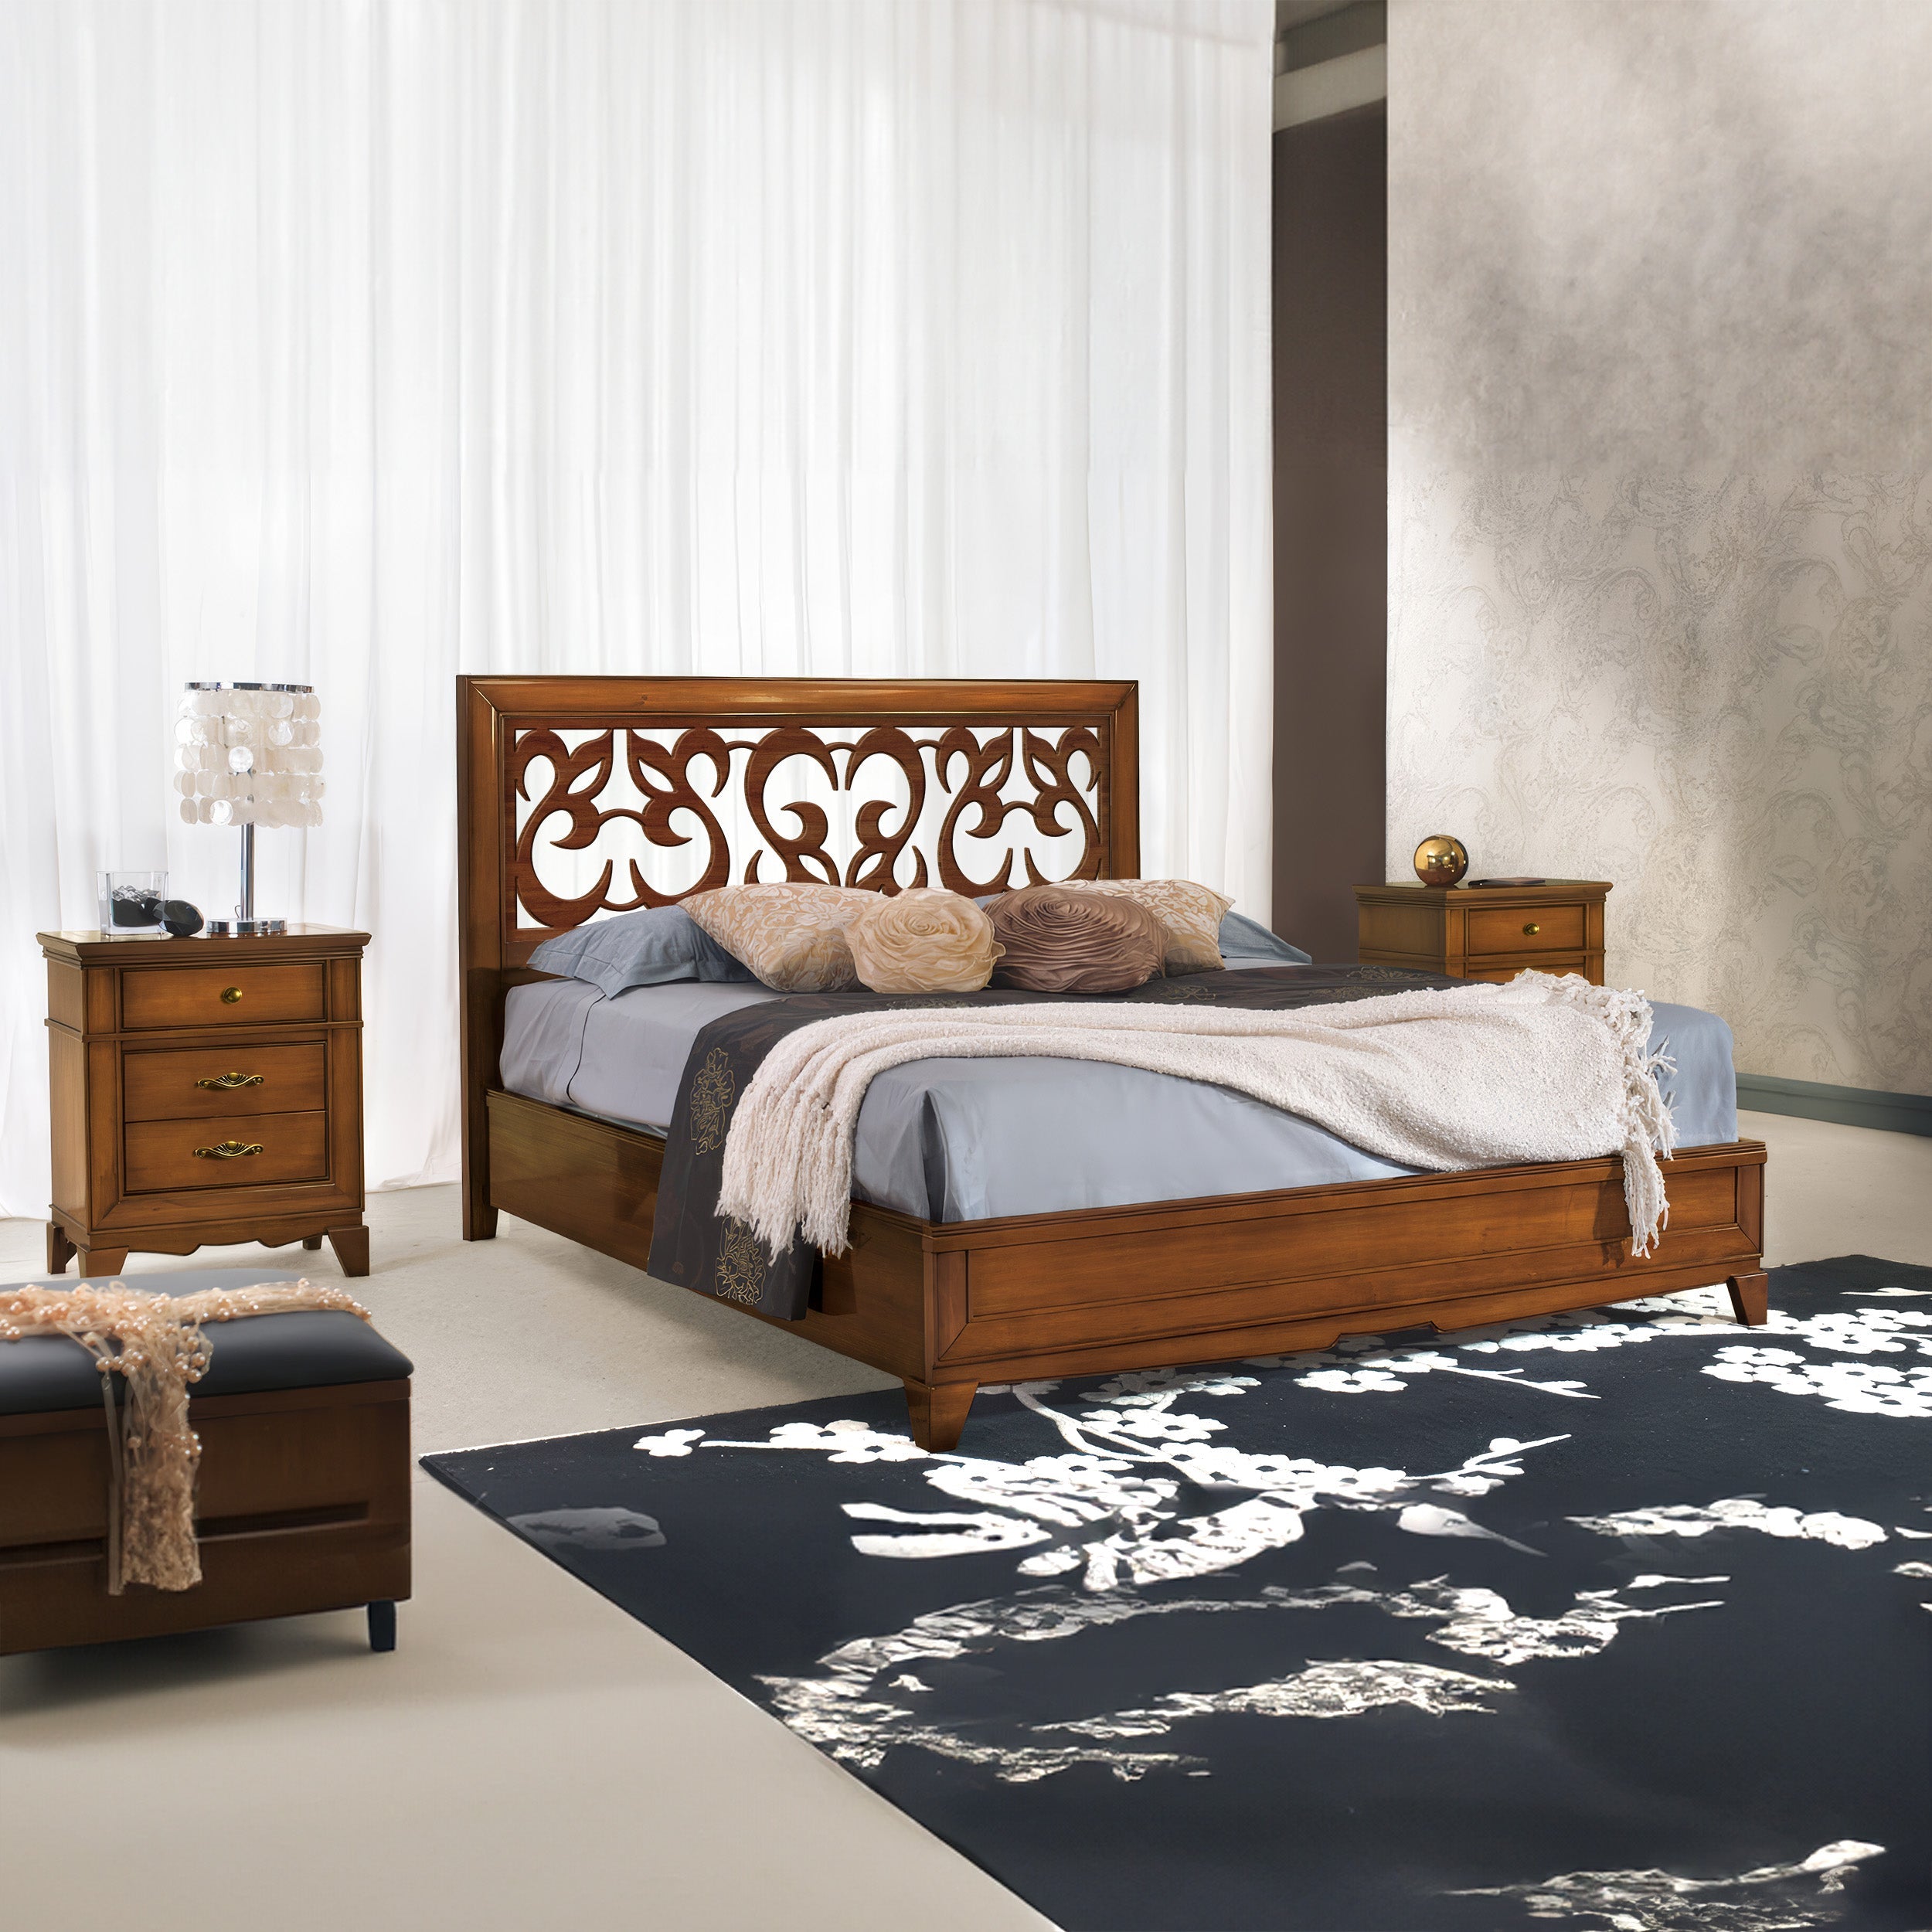 Классическая деревянная двуспальная кровать с перфорированным изголовьем W 194 D 211 см Collezione Arte D'Este Piombini